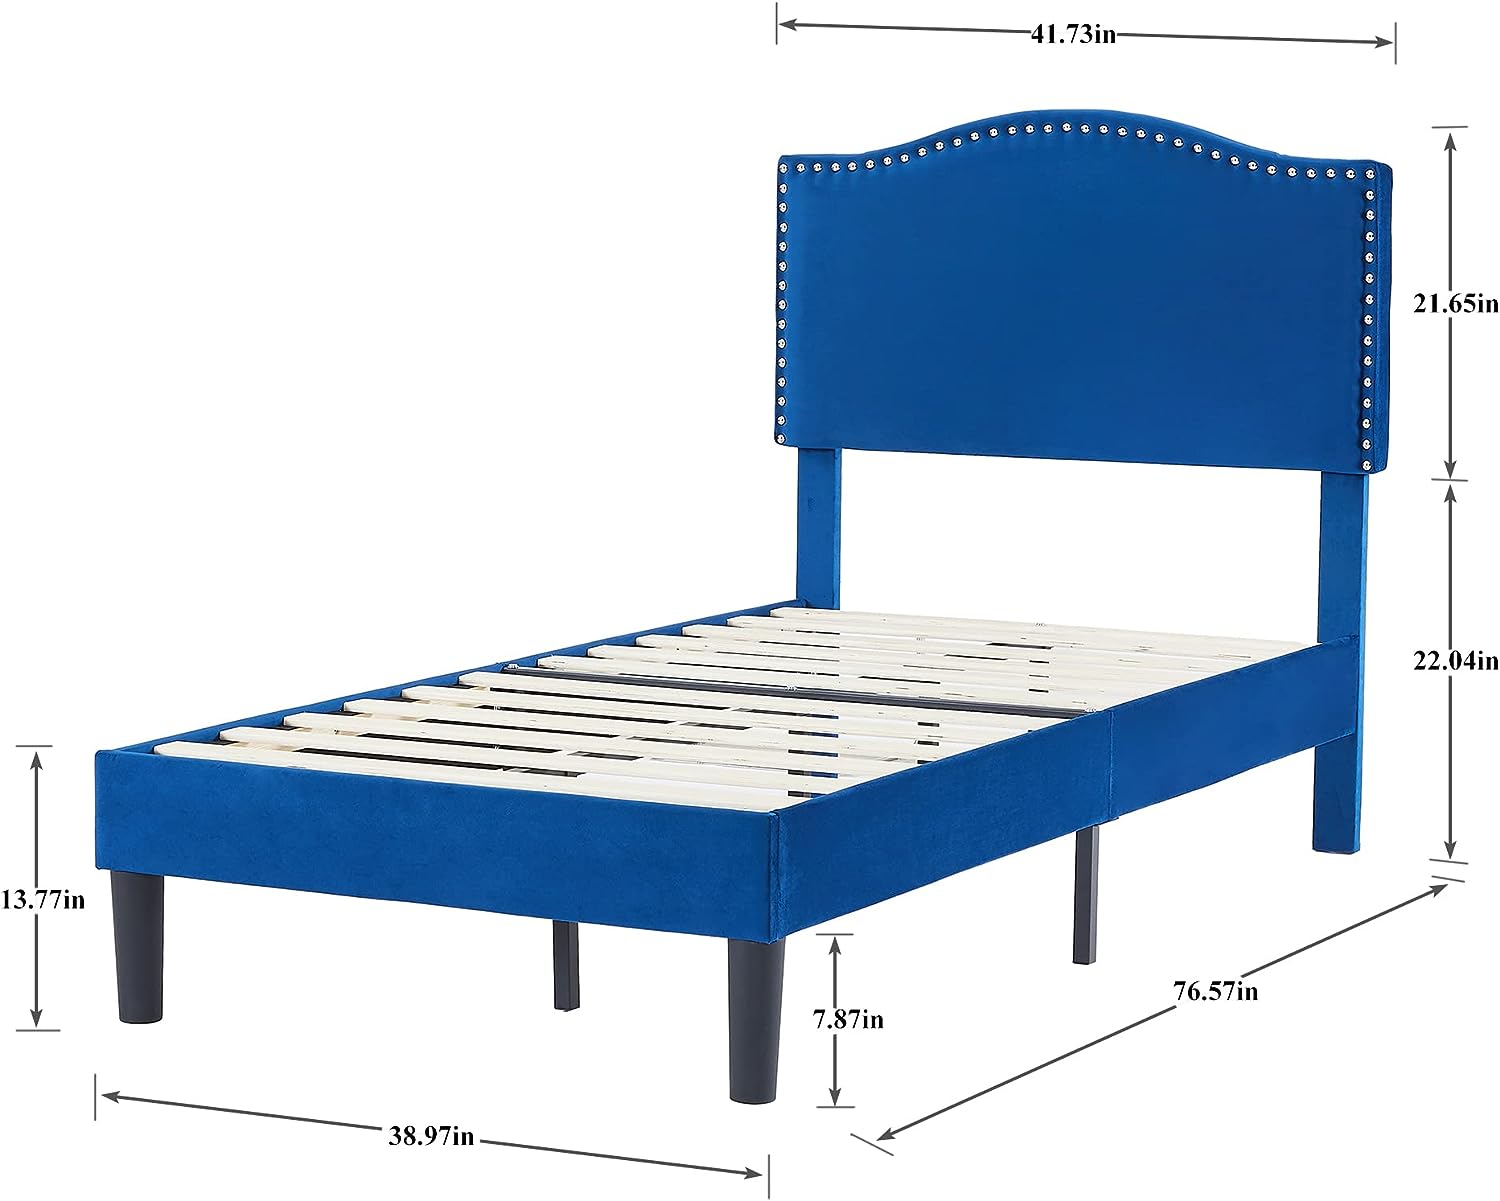 Bed Frame Platform with Upholstered Headboard